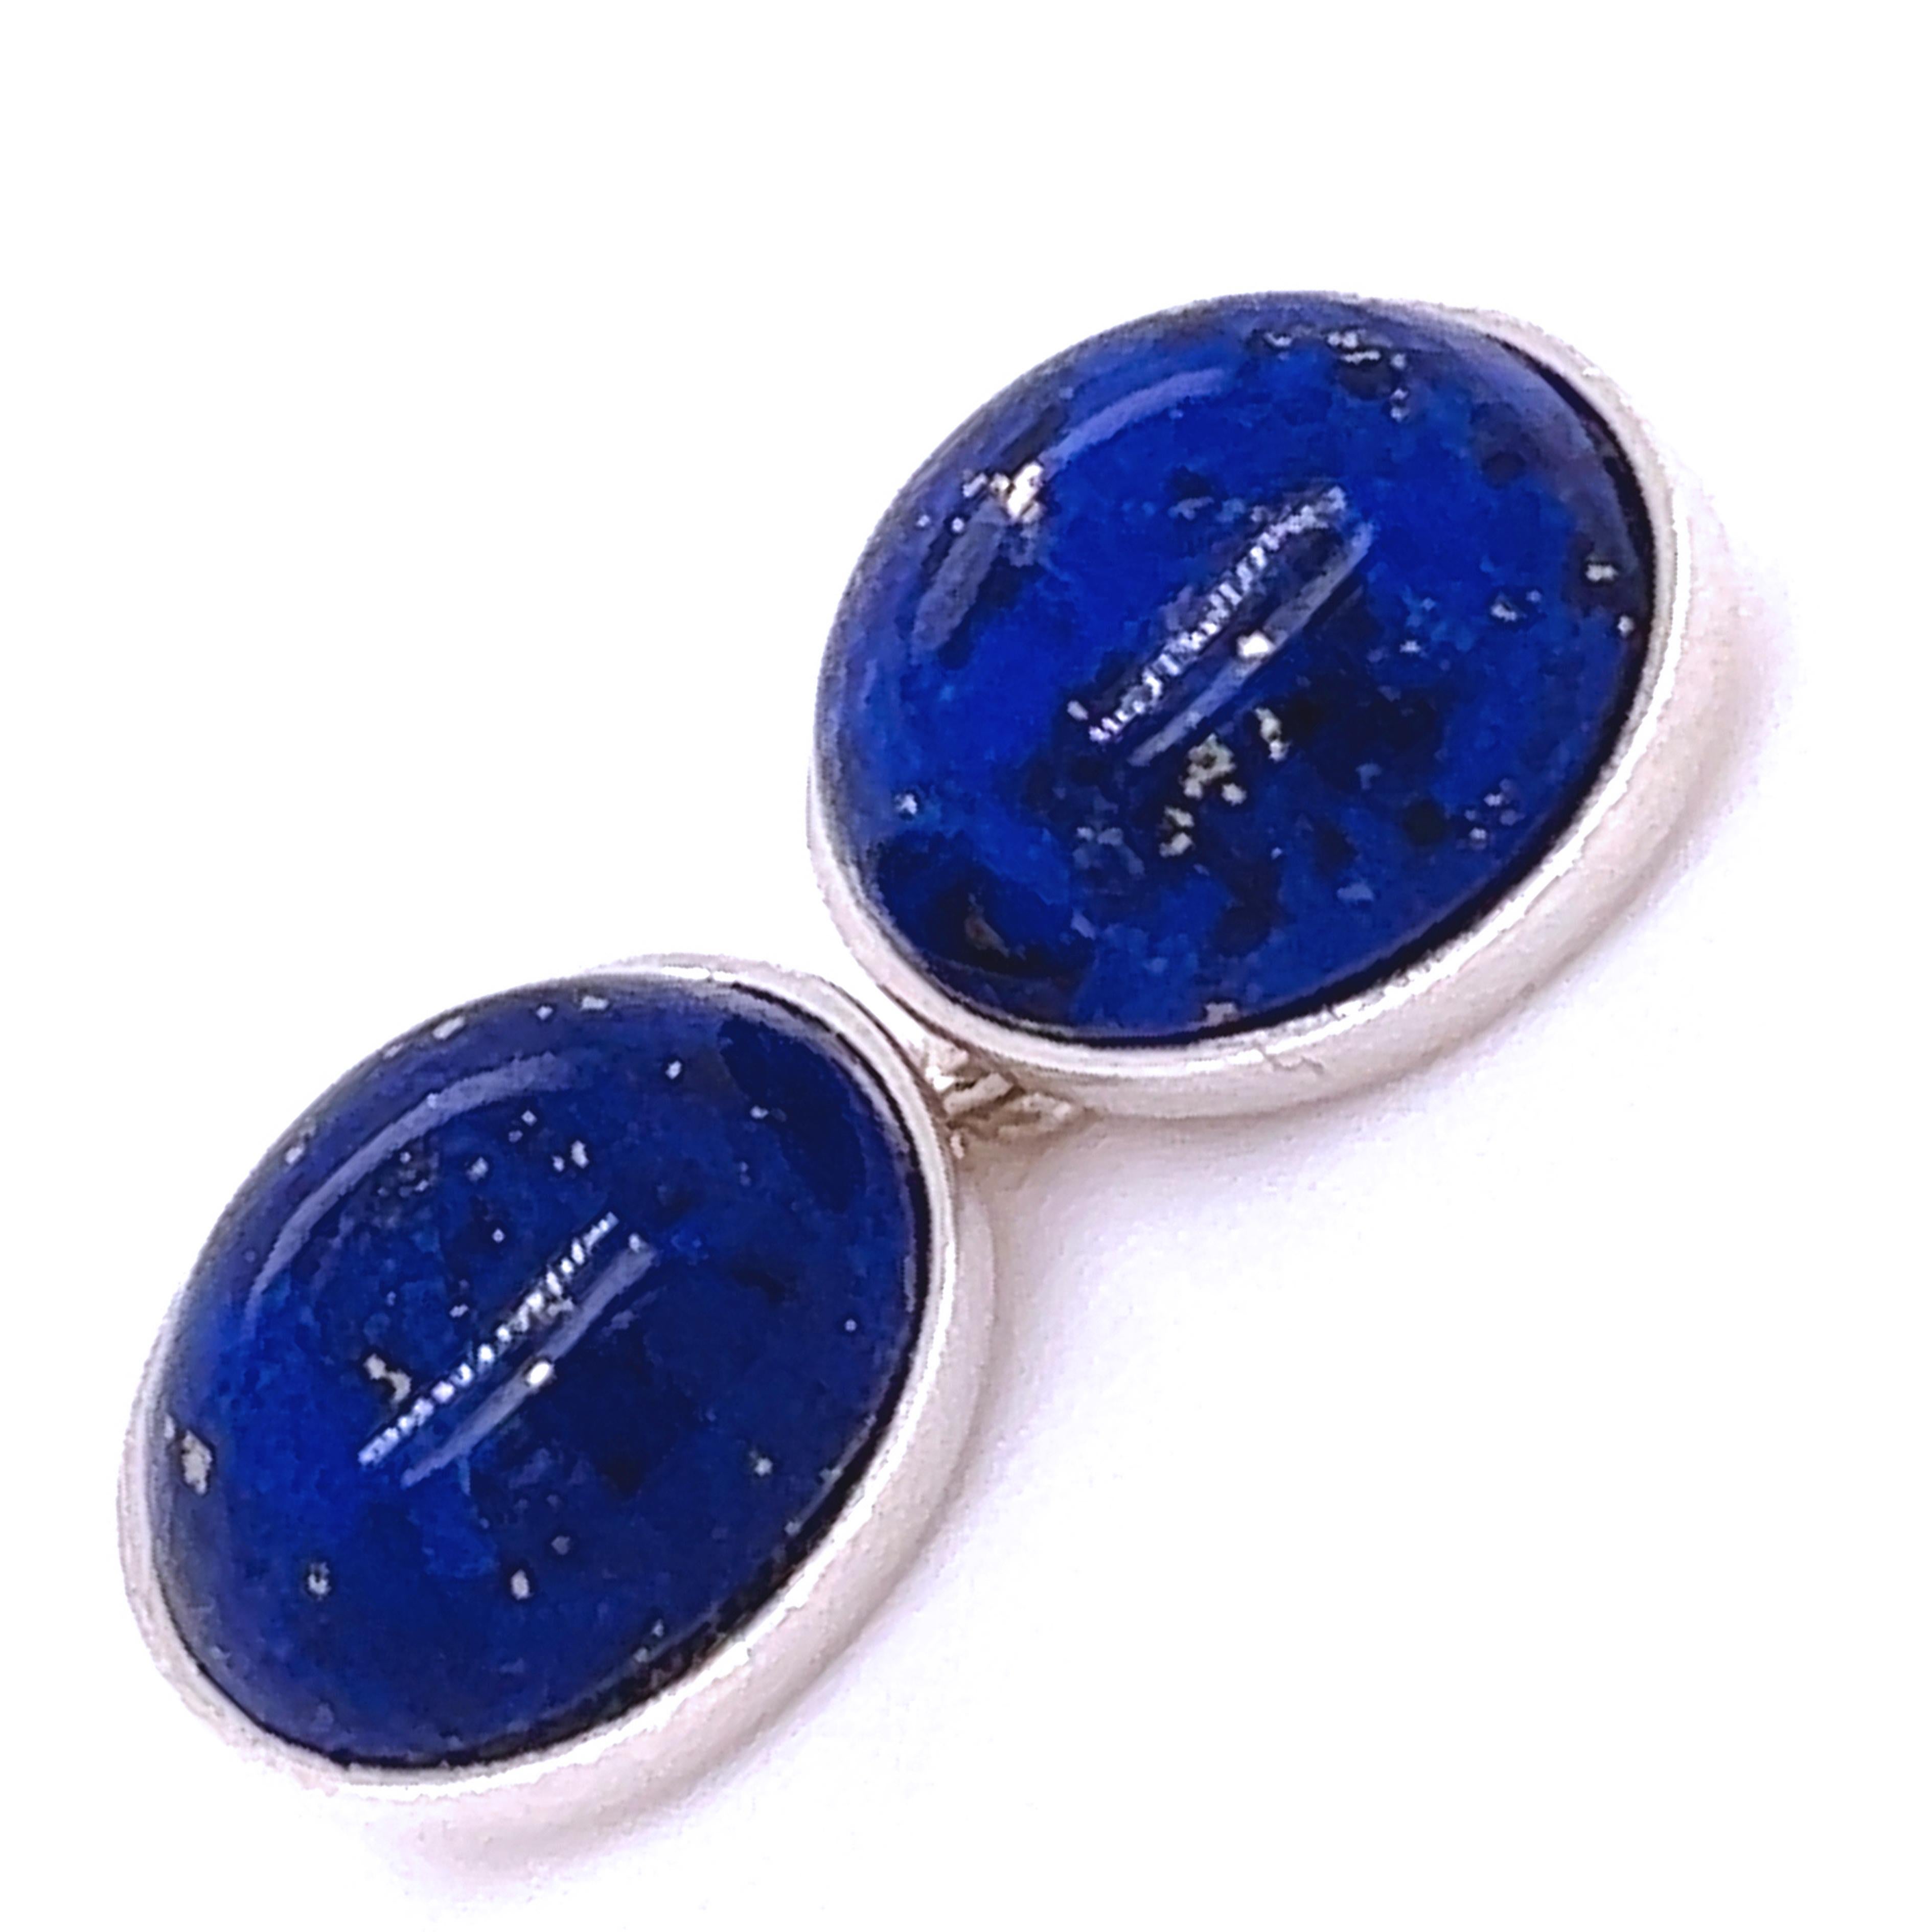 Chic und zeitlos, natürliche Hand Intarsien Lapis Lazuli Cabochon Oval geformt Sterling Silber Manschettenknöpfe.
In unserem eleganten Etui und Etui aus tabakfarbenem Wildleder.

